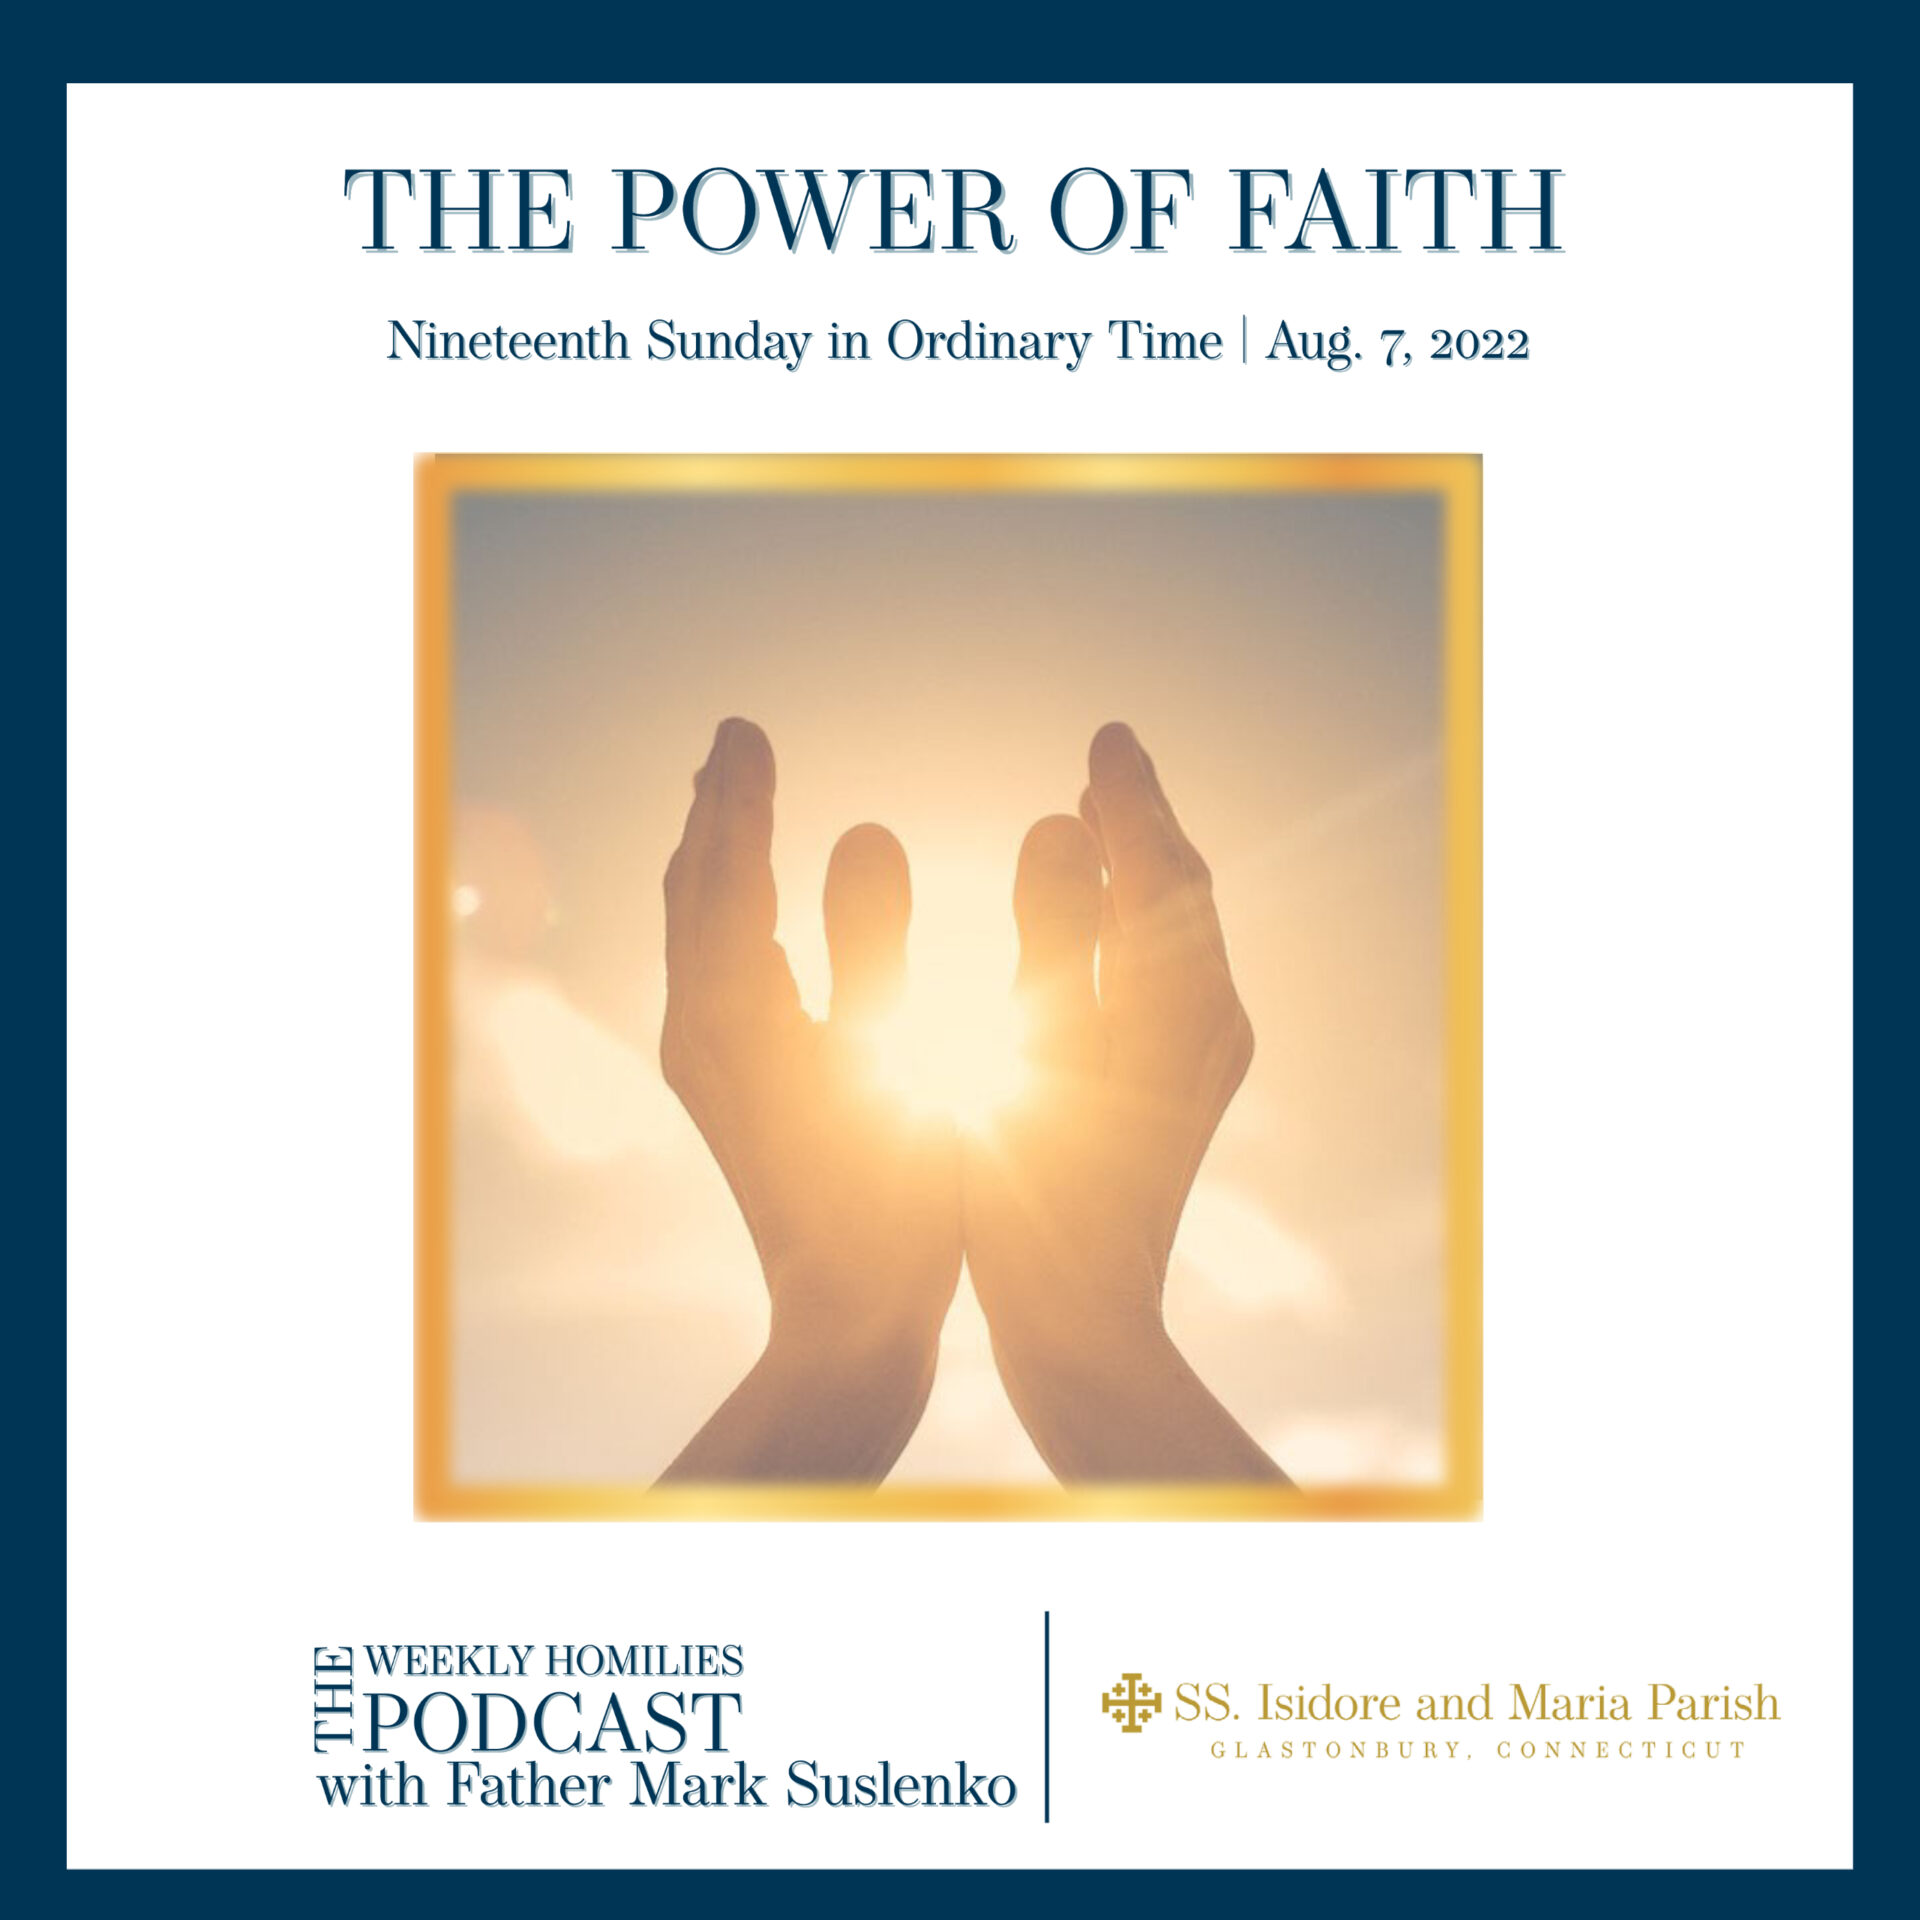 PODCAST: The Power of Faith